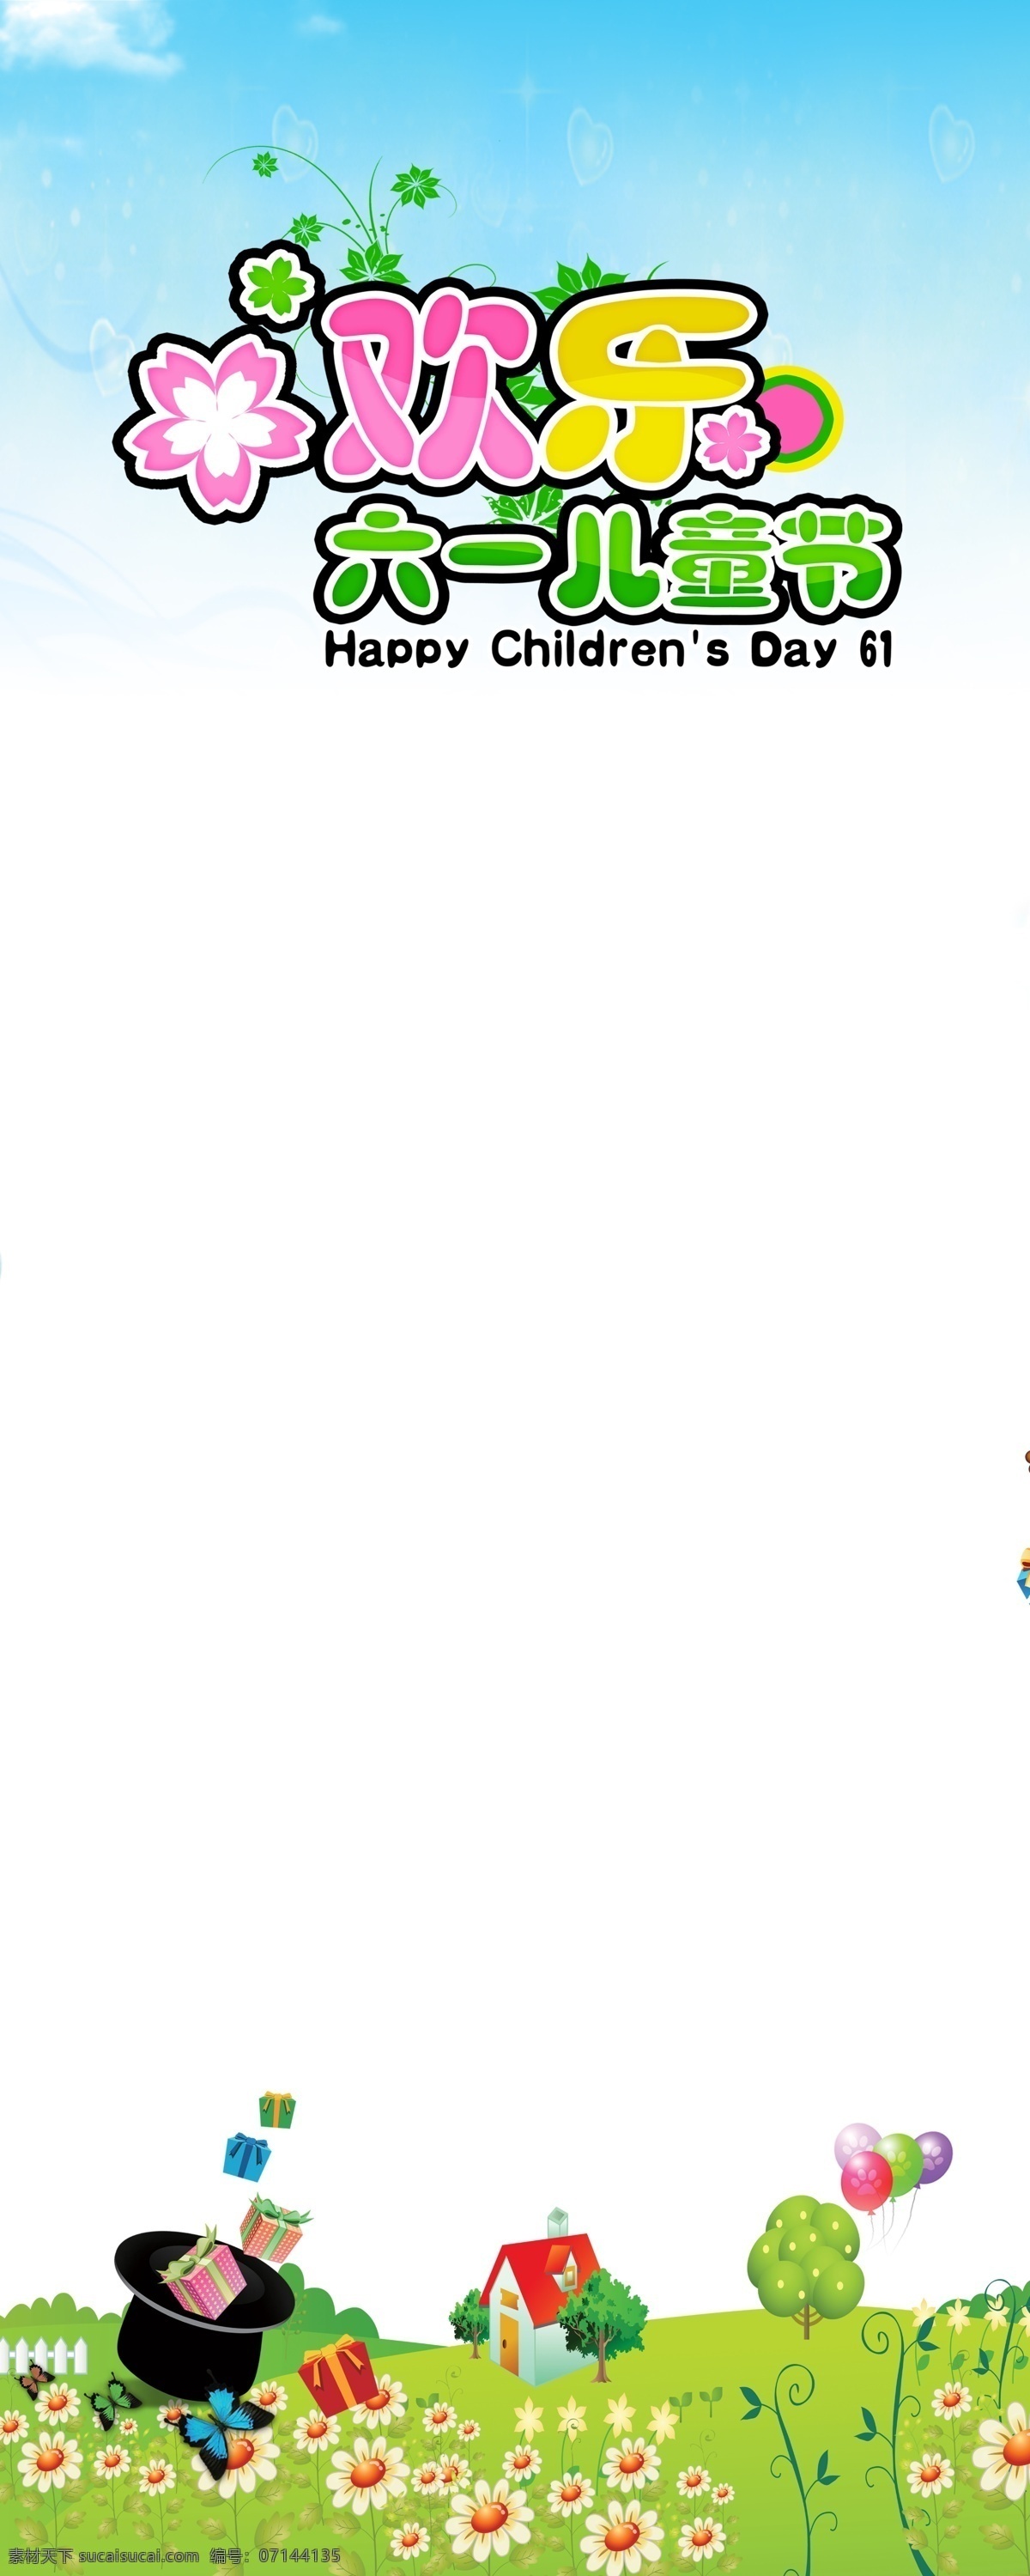 六一儿童节 展架 模版下载 六一 儿童节 x展架 易拉宝 欢乐 礼品盒 帽子 绿地 气球 房屋 花 天空 展板模板 广告设计模板 源文件